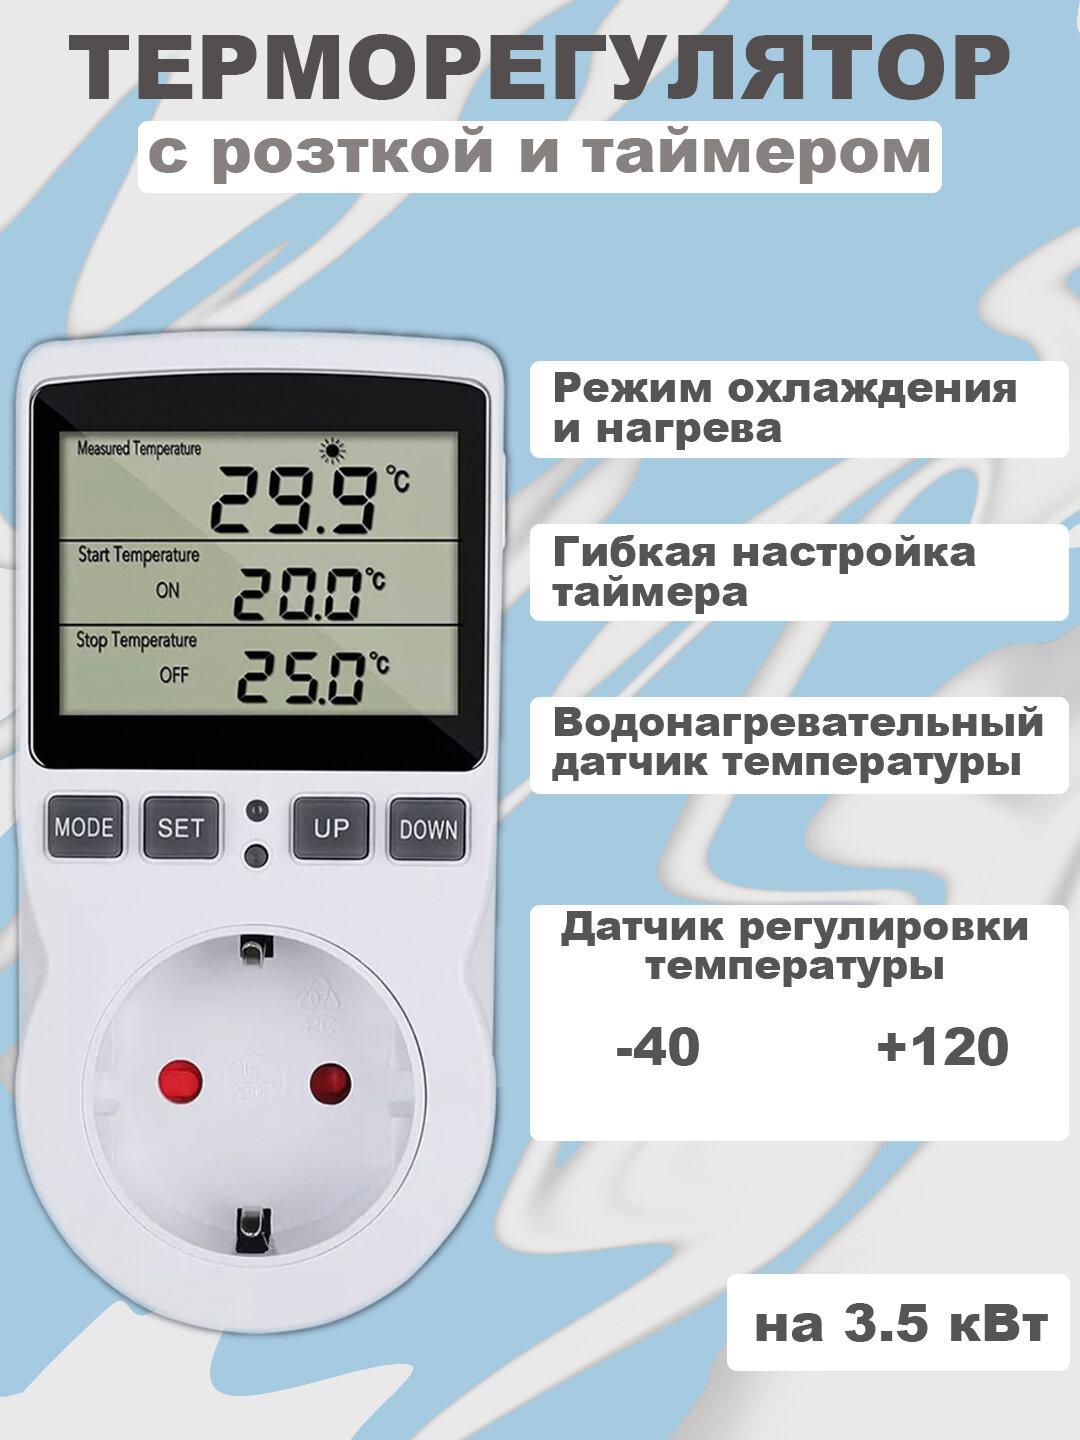 Цифровая розетка с термостатом KT-3100, розетка с таймером, 16 А, 220 В